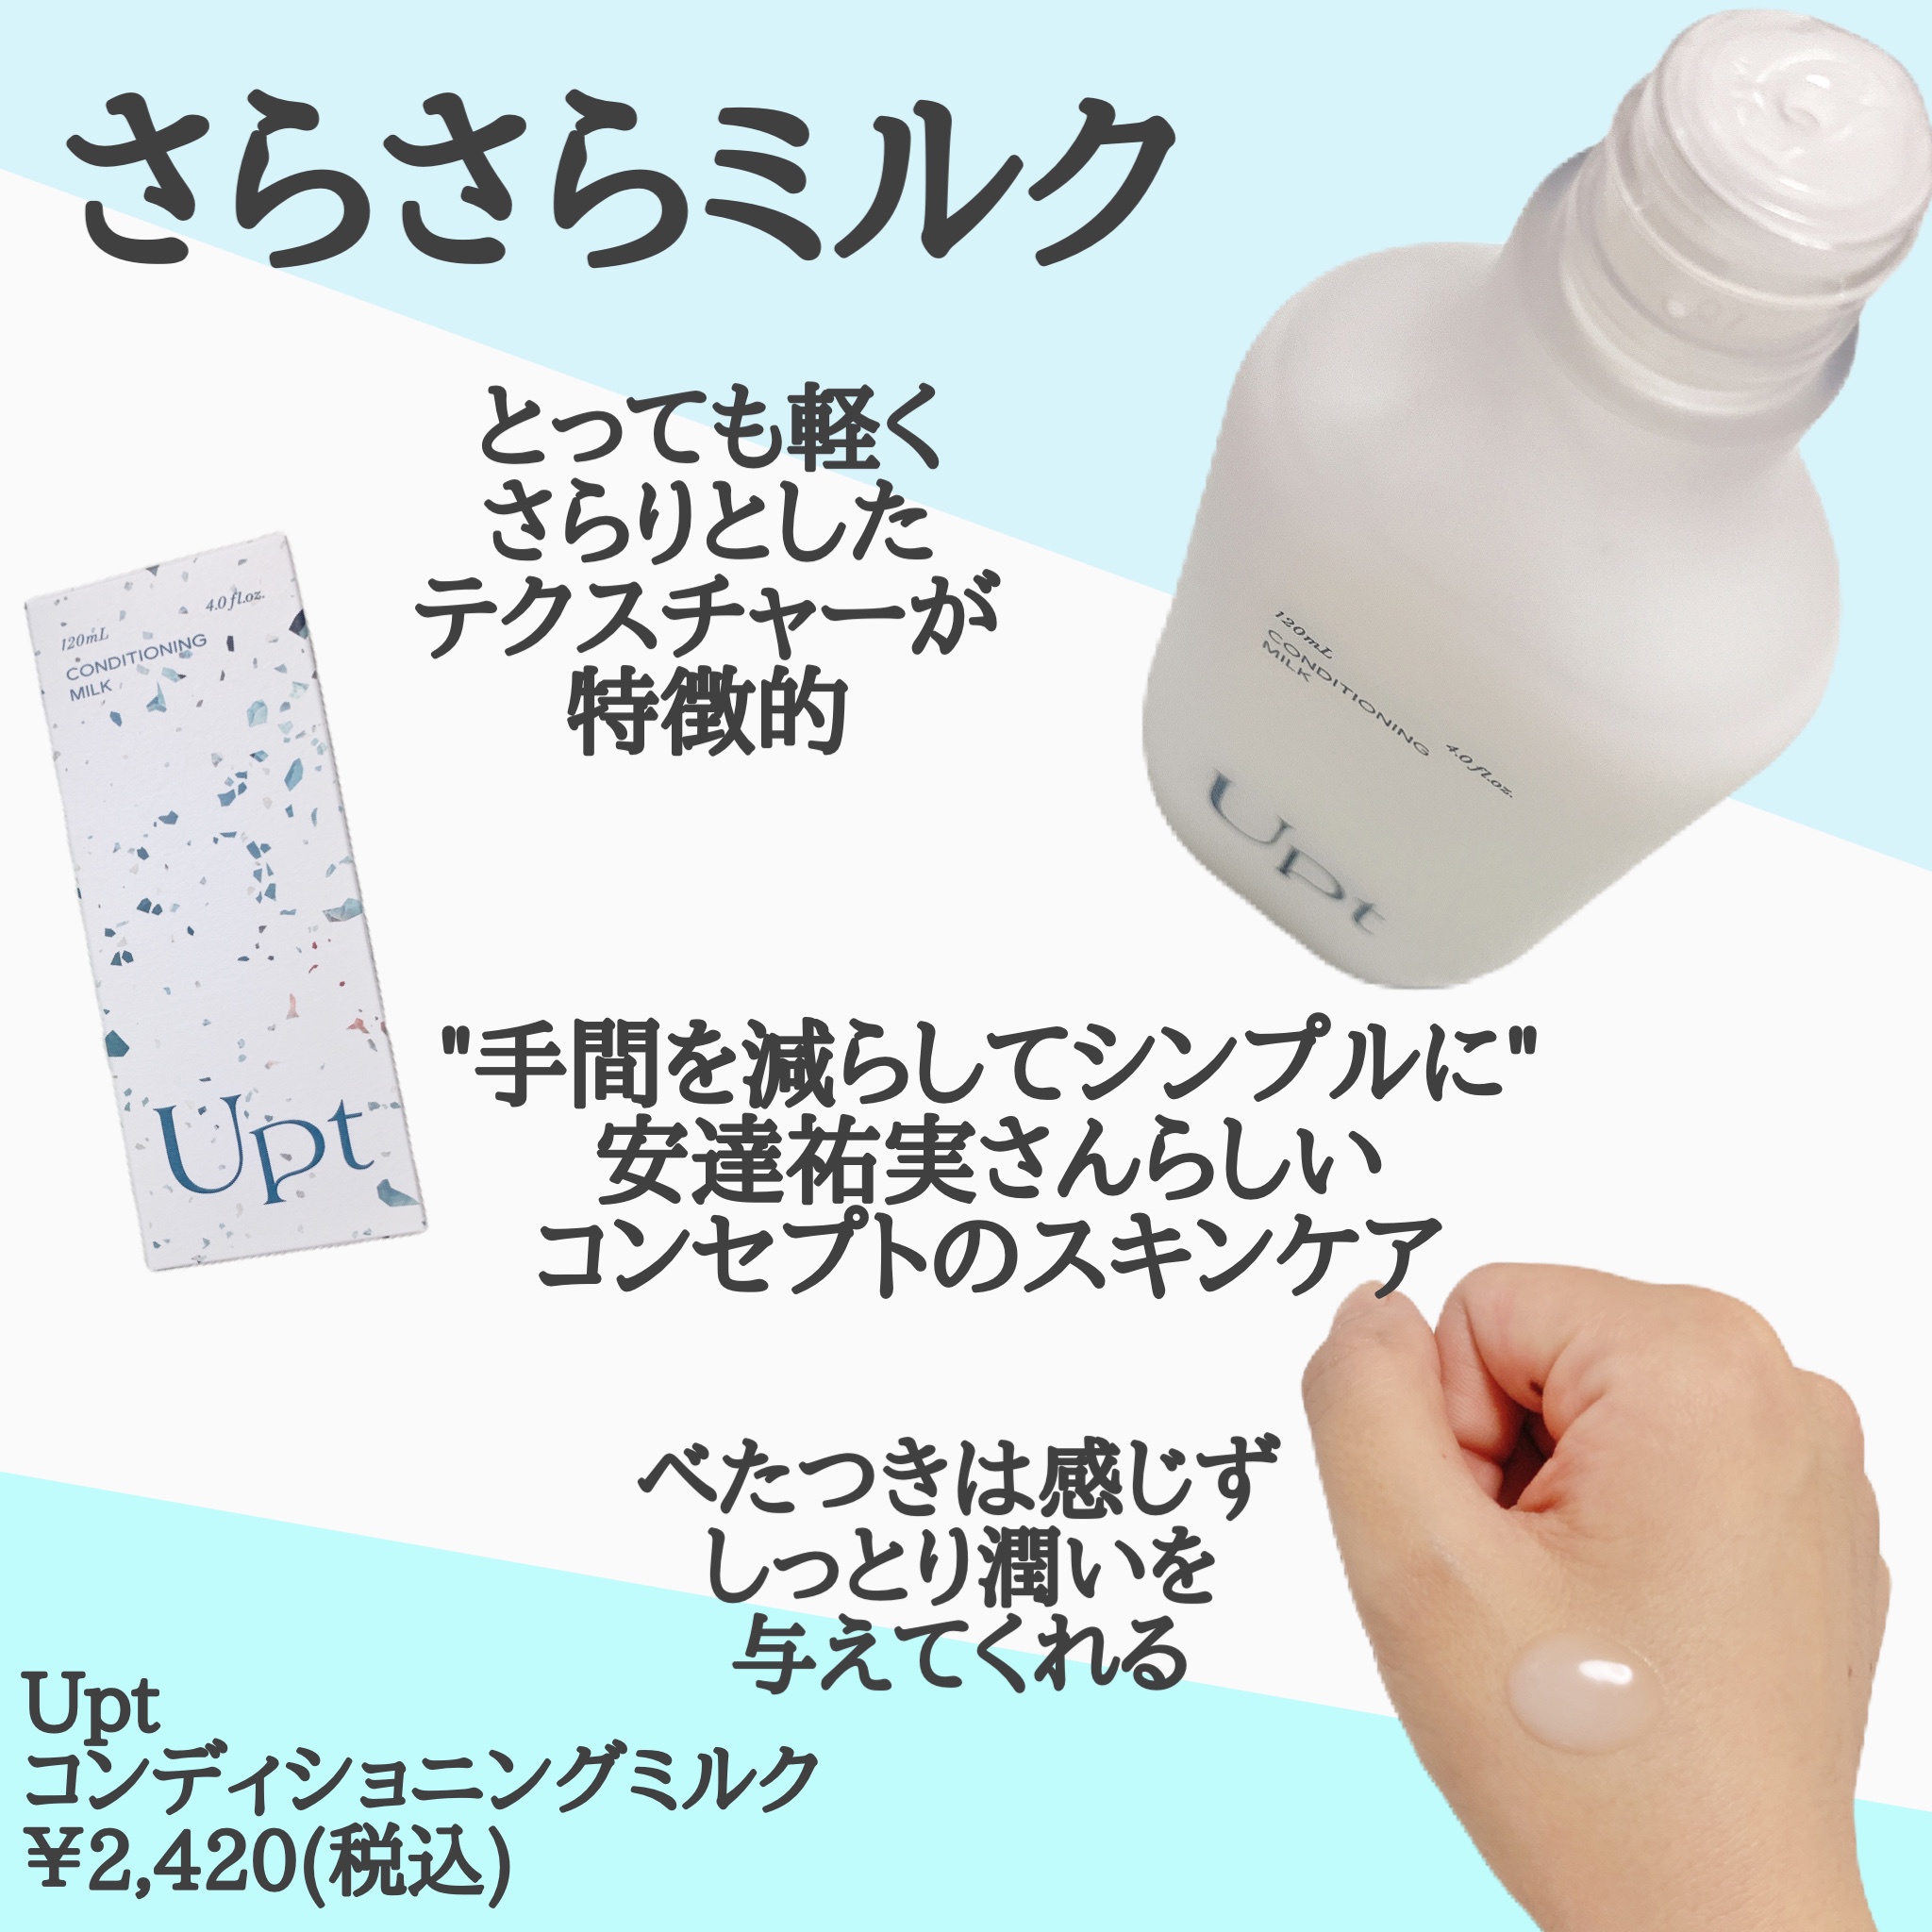 ウプト コンディショニングミルク - 乳液・ミルク